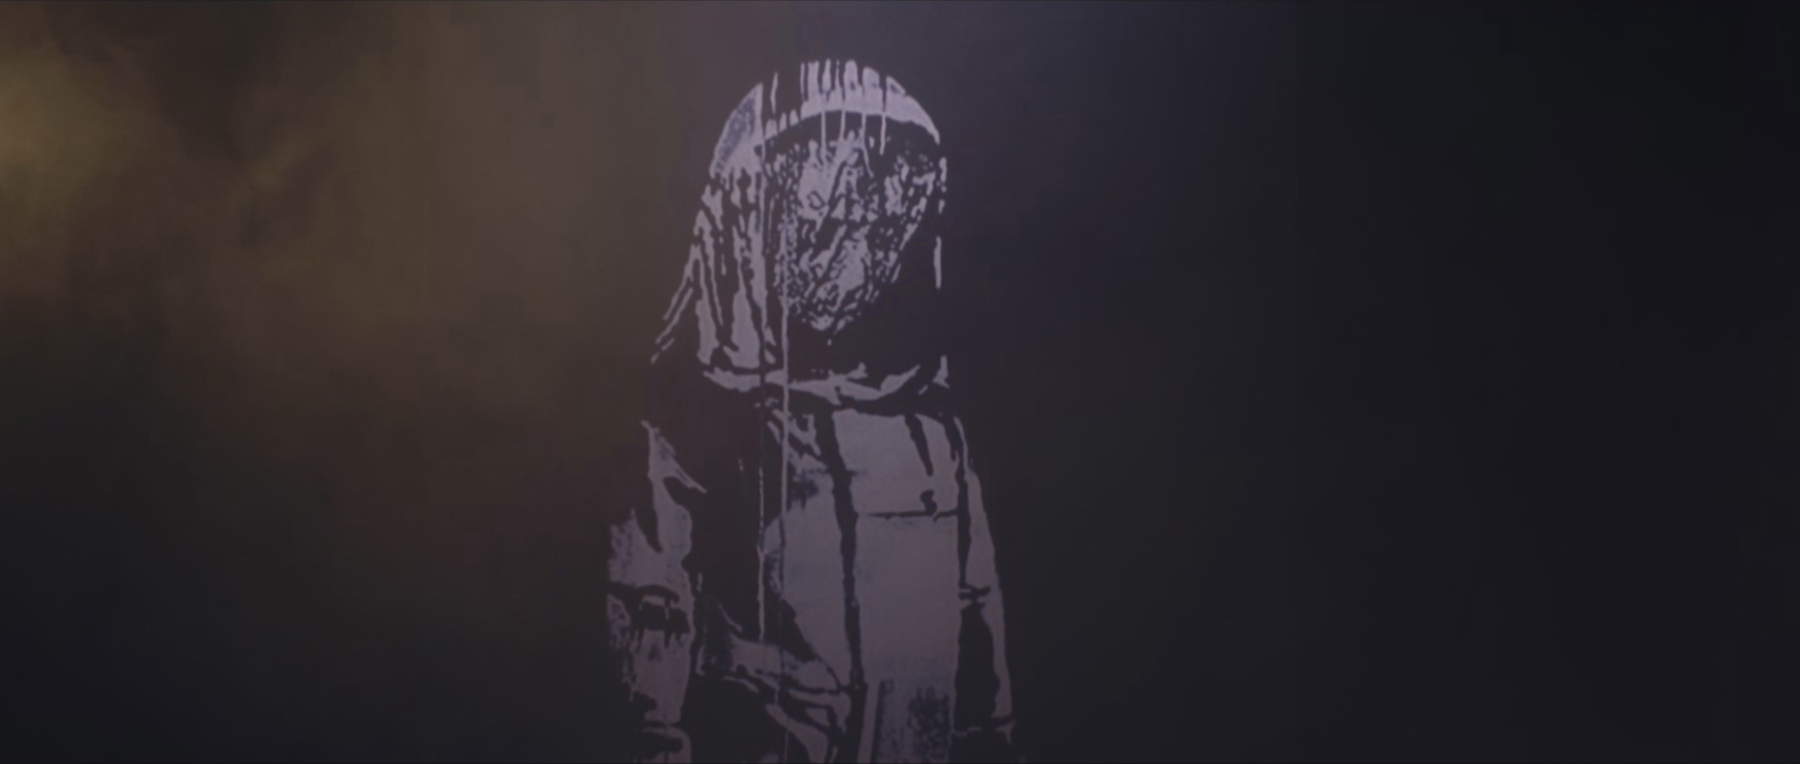 Banksy e la ragazza del Bataclan: il film in onda su Rai5